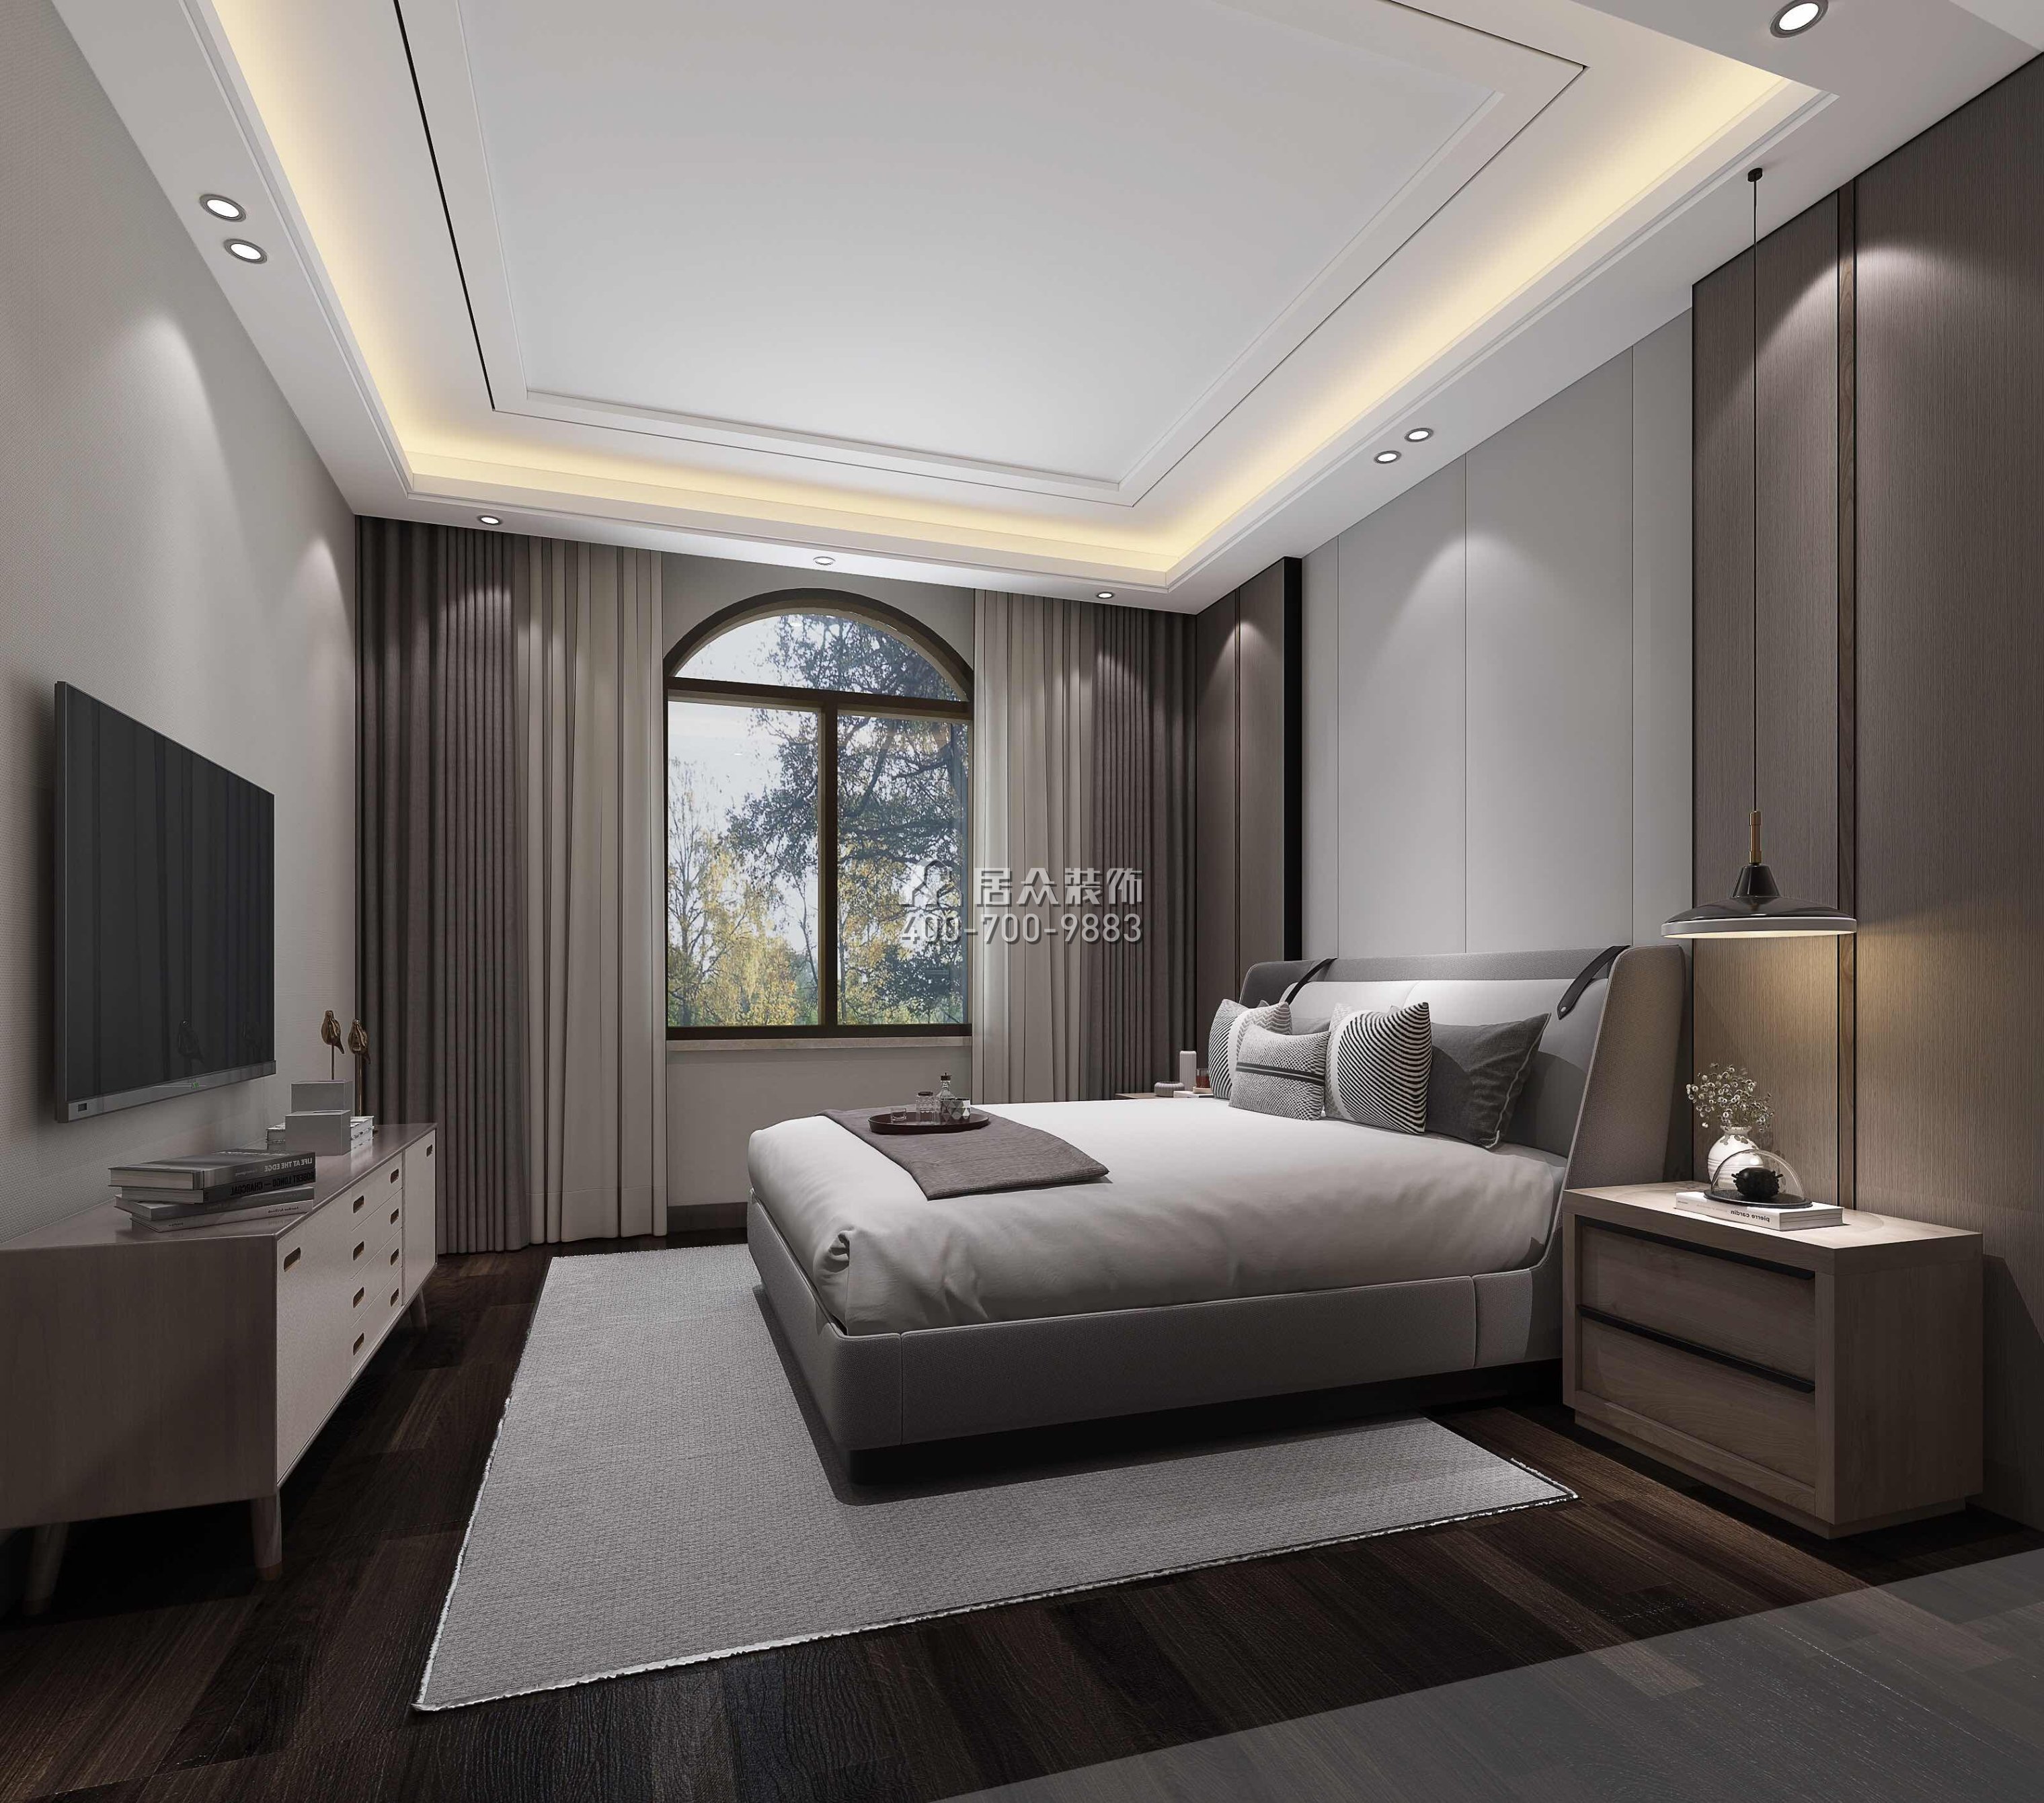 江畔豪庭800平方米現代簡約風格別墅戶型臥室裝修效果圖